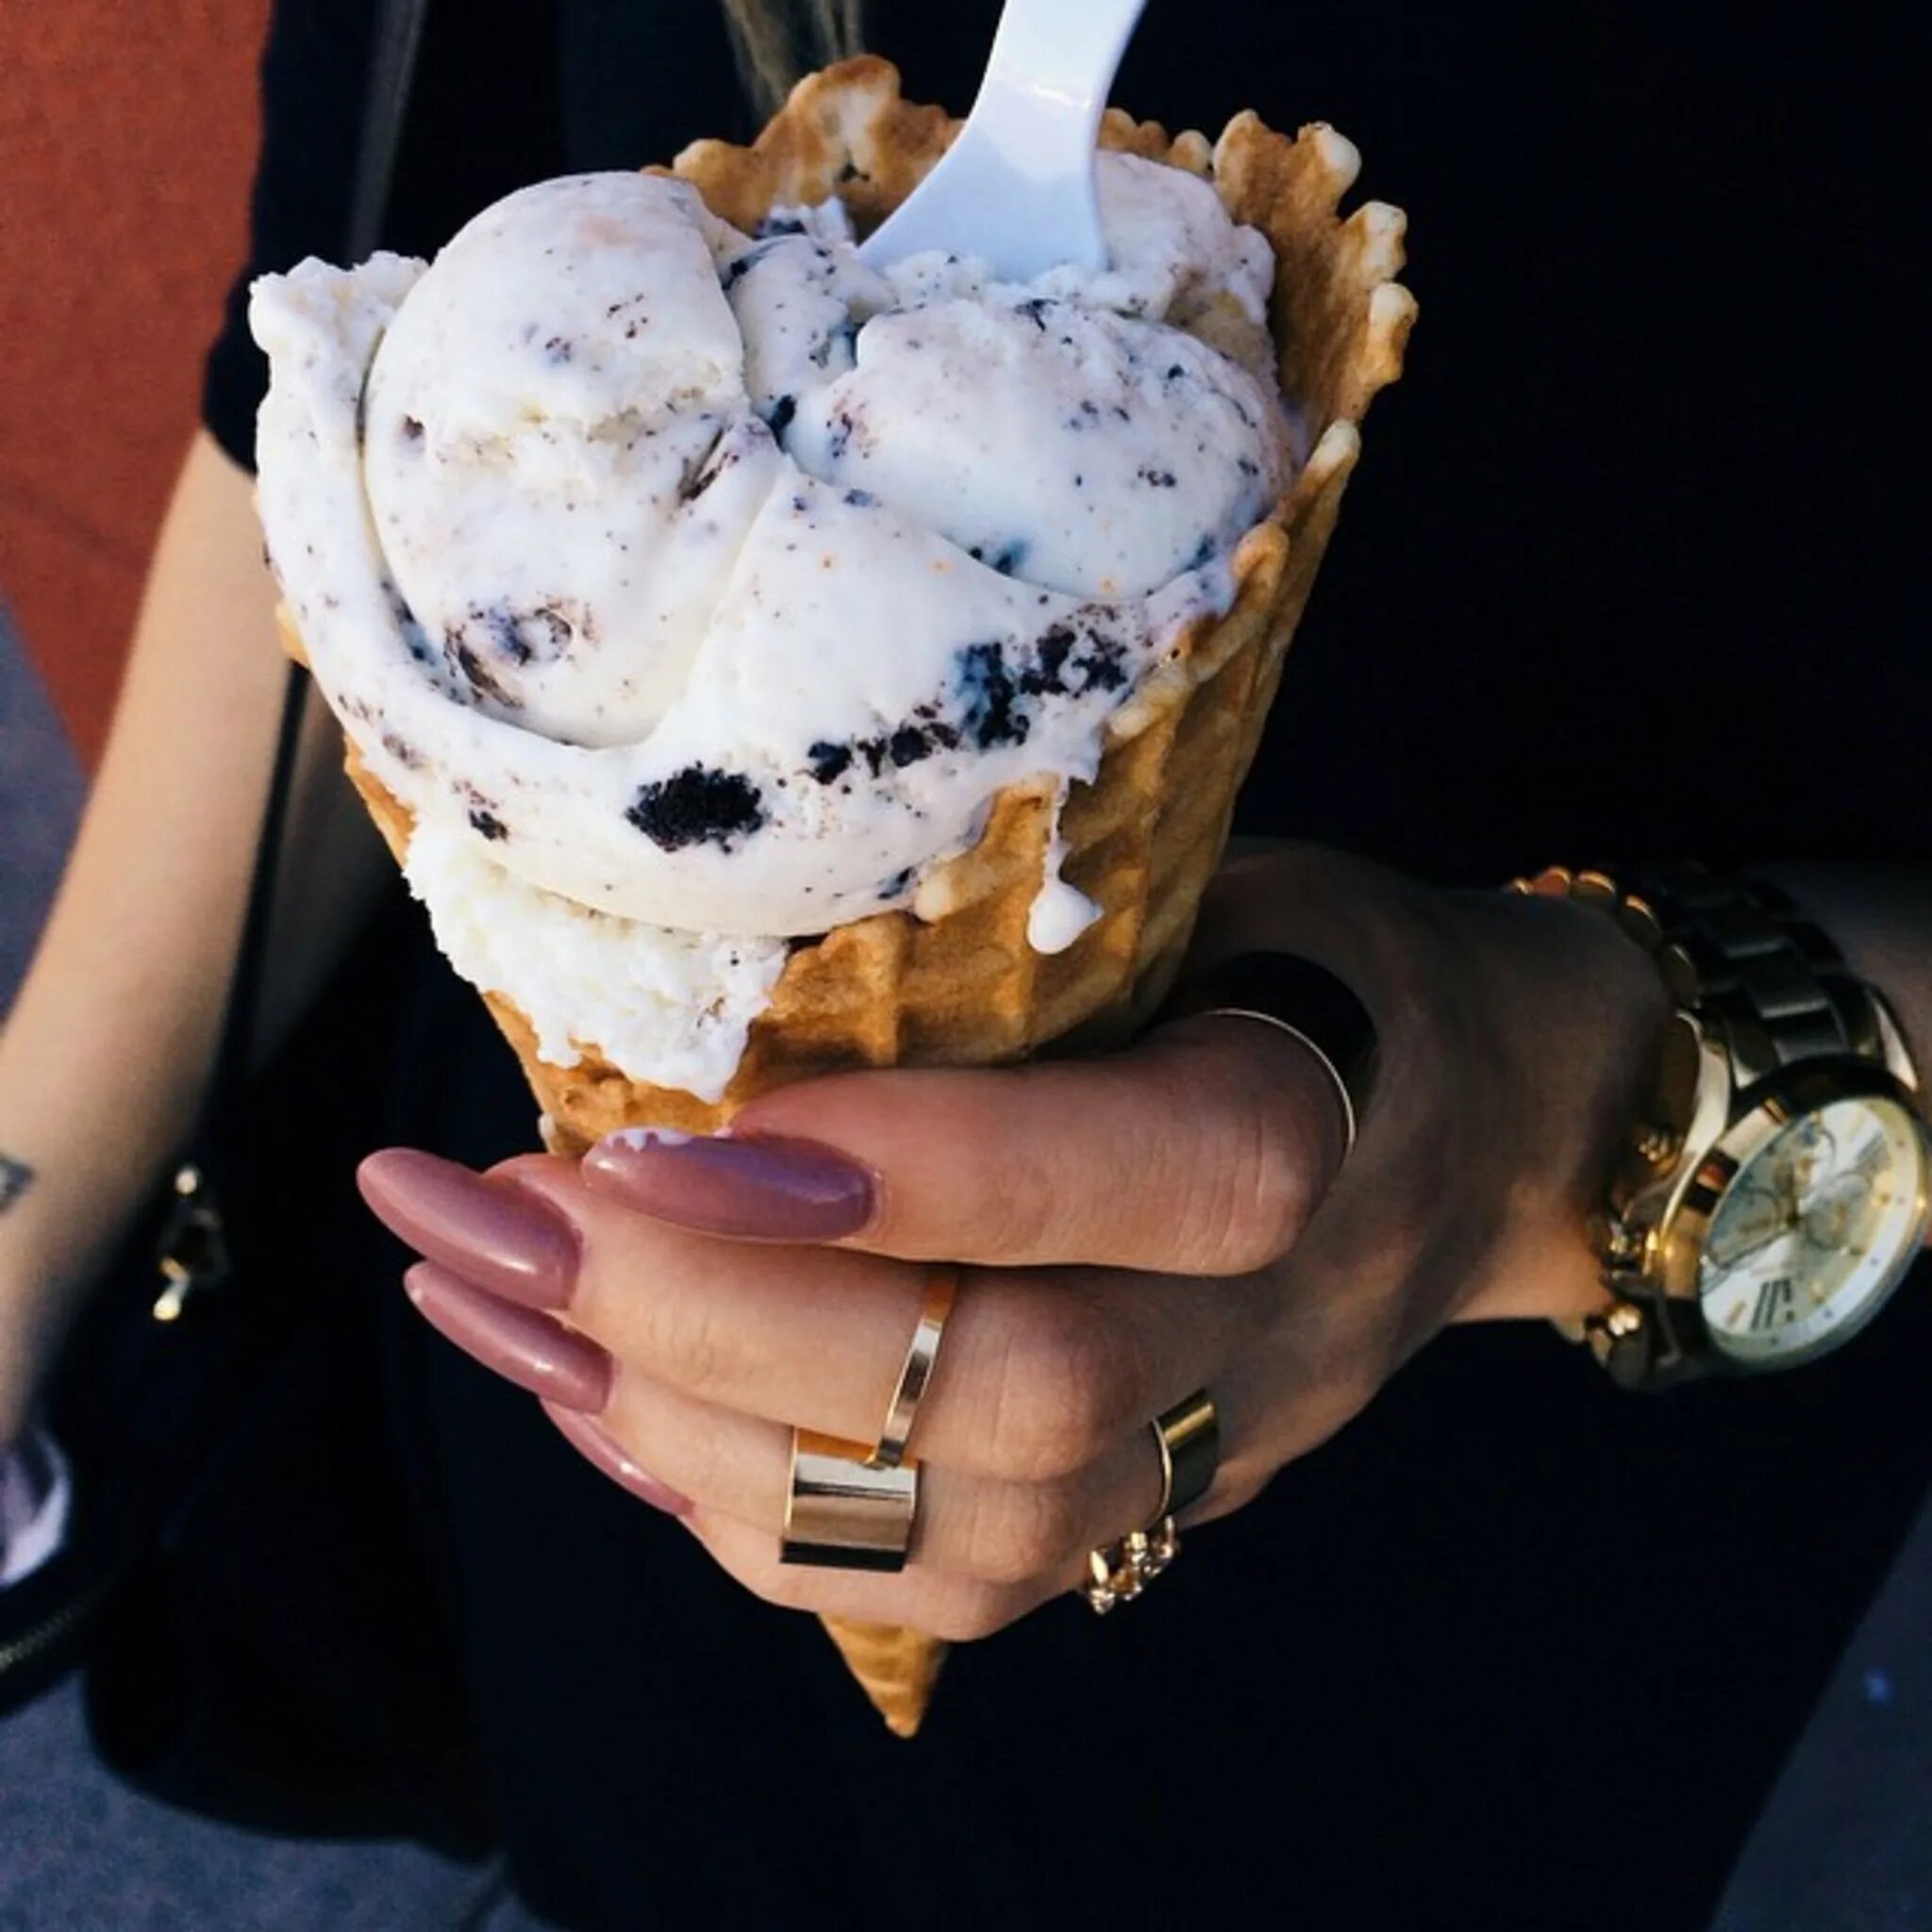 Вечернее мороженое. Мороженое в руке. Мороженое в руке у девушки. Девушка с мороженым в руке. Красивое мороженое в руках.